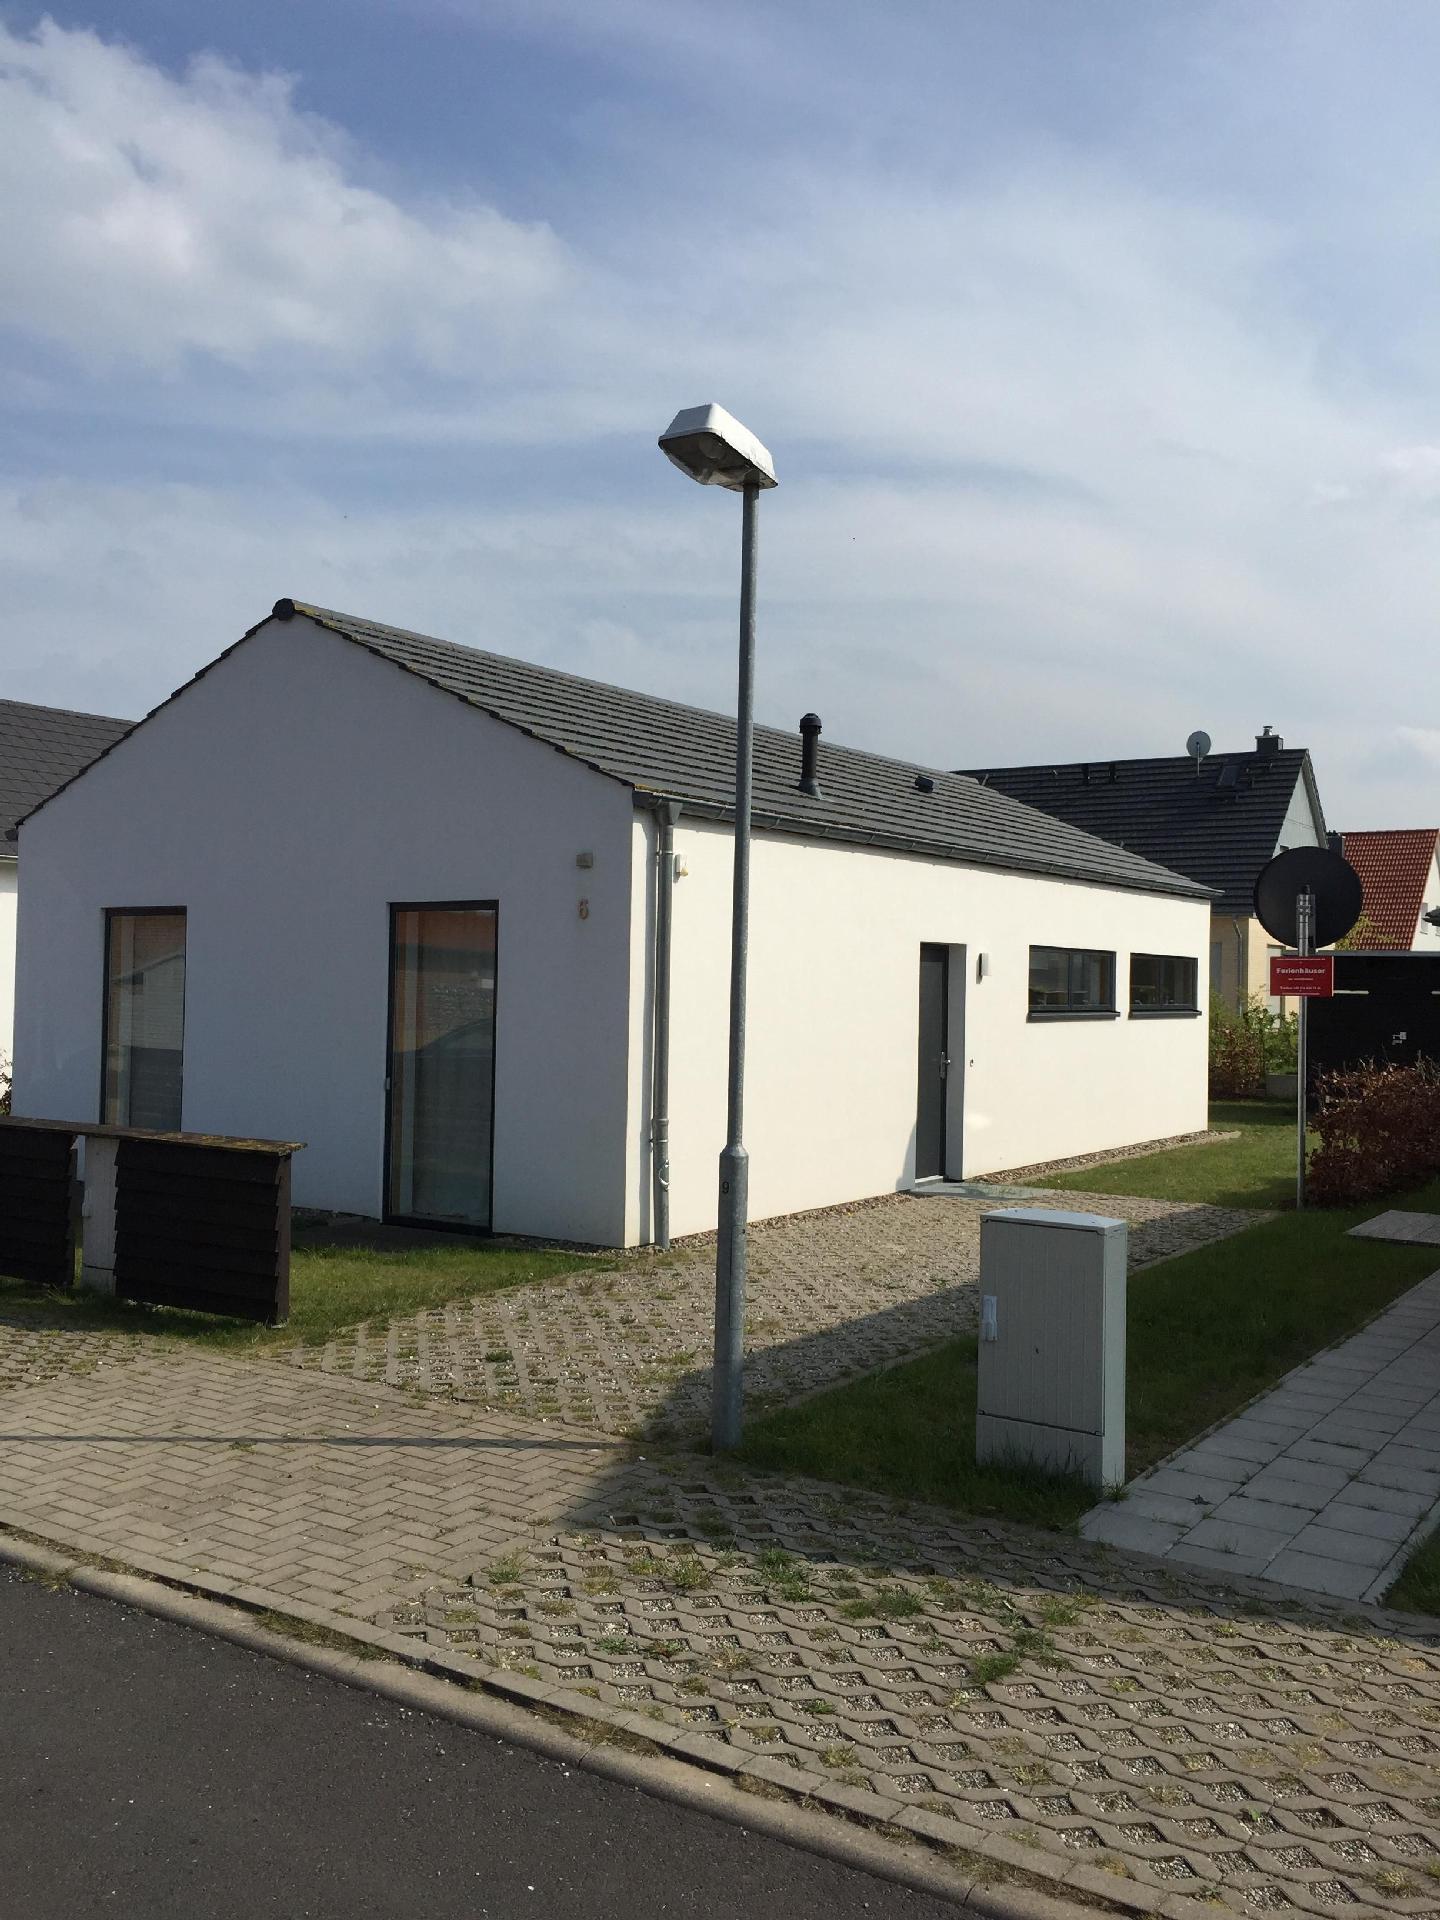 Ferienhaus mit grosser Terrasse und Stelllplatz na Ferienhaus in Mecklenburg Vorpommern